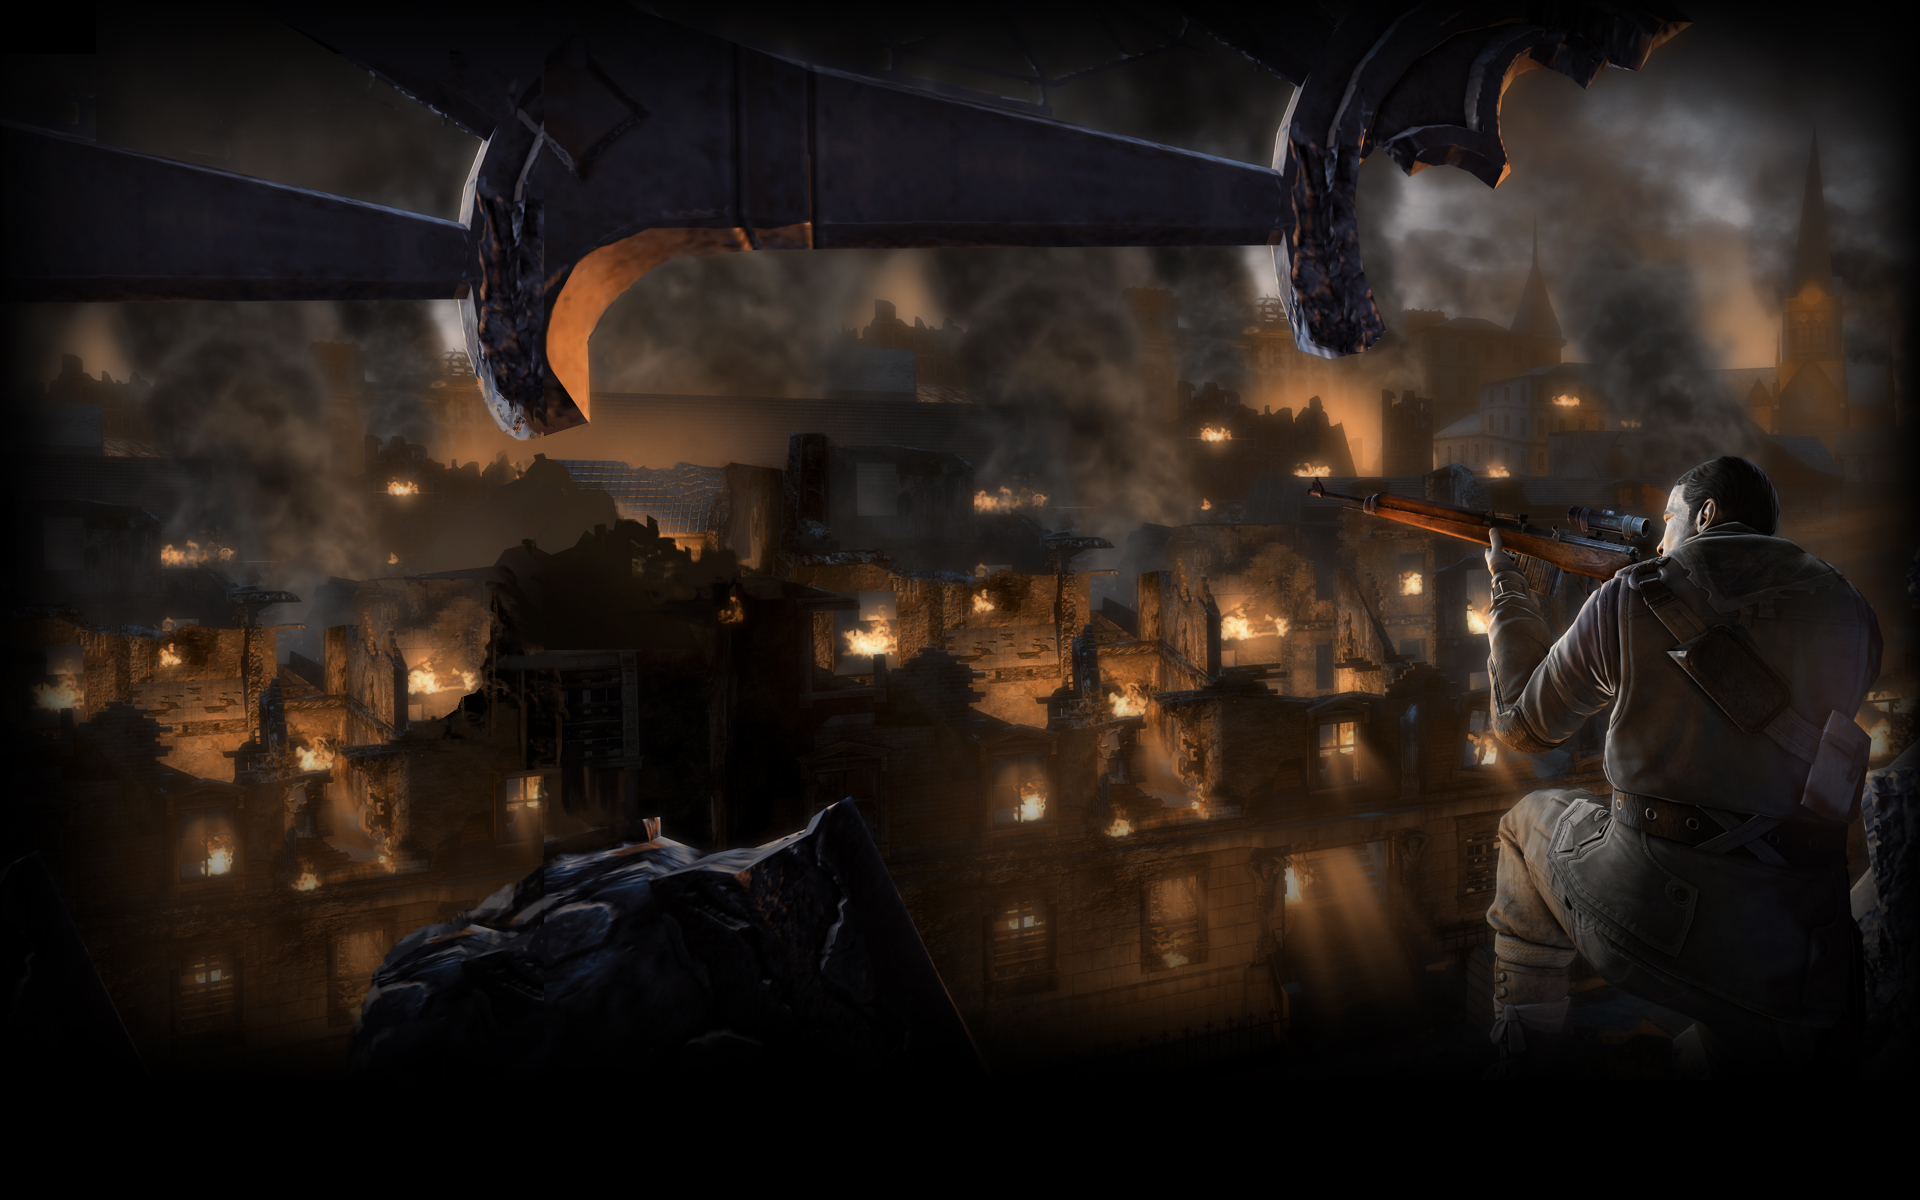 Video Game Sniper Elite V2 HD Wallpaper | Background Image